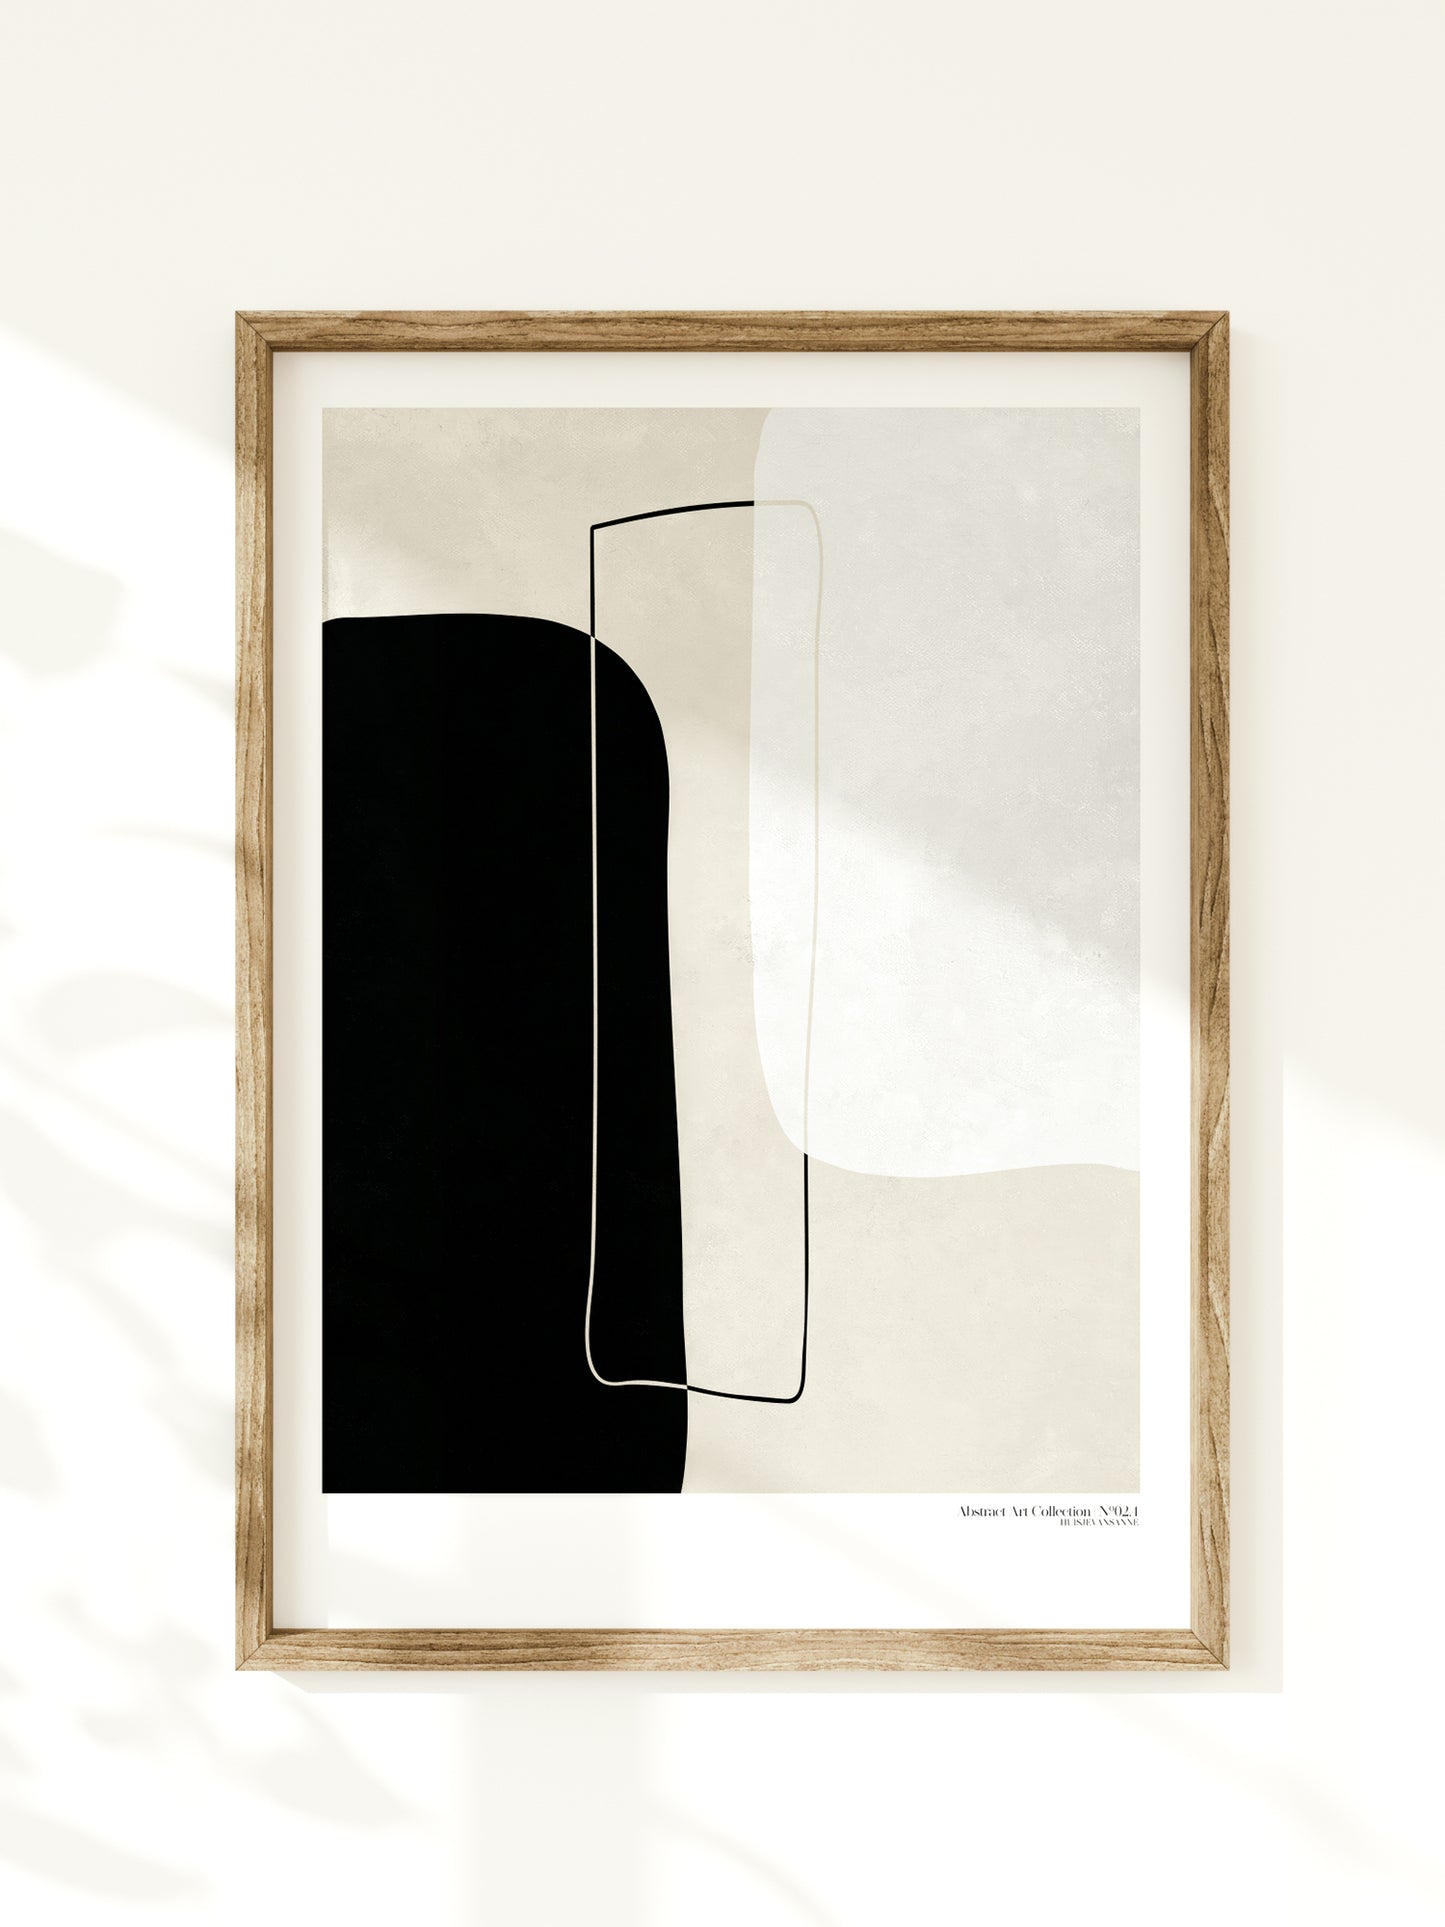 huisje van sanne abstract art poster met geometrische beige, zwart en witte vormen